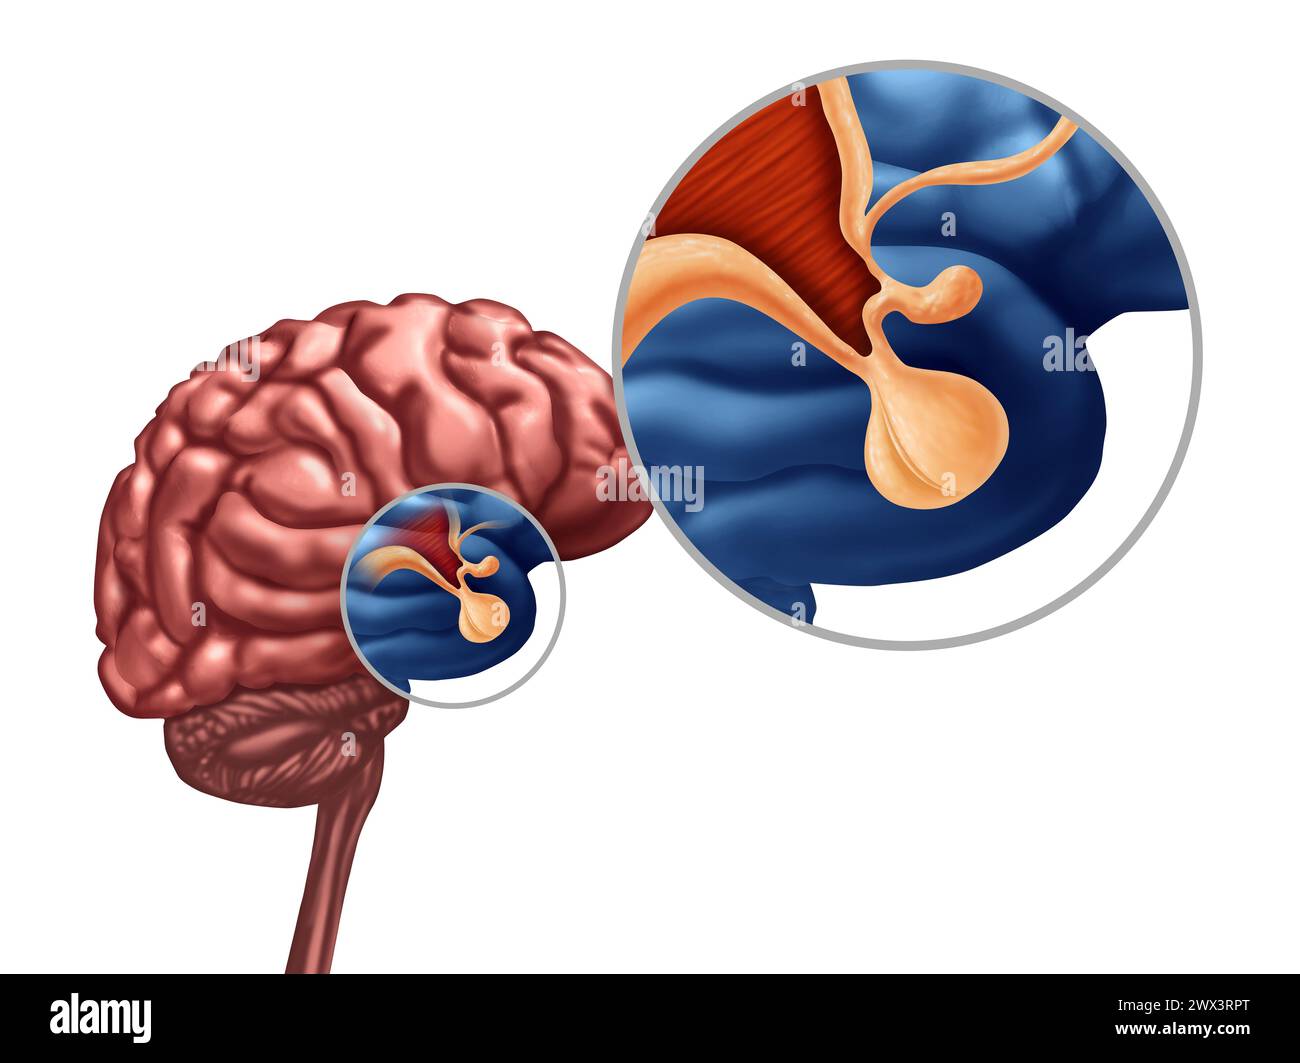 Hypophyse- oder Hypothalamus- oder Hypophysis cerebri-Konzept als Symbol des endokrinen Systems in Verbindung mit Wachstumshormon als Teil der menschlichen Anatomie. Stockfoto